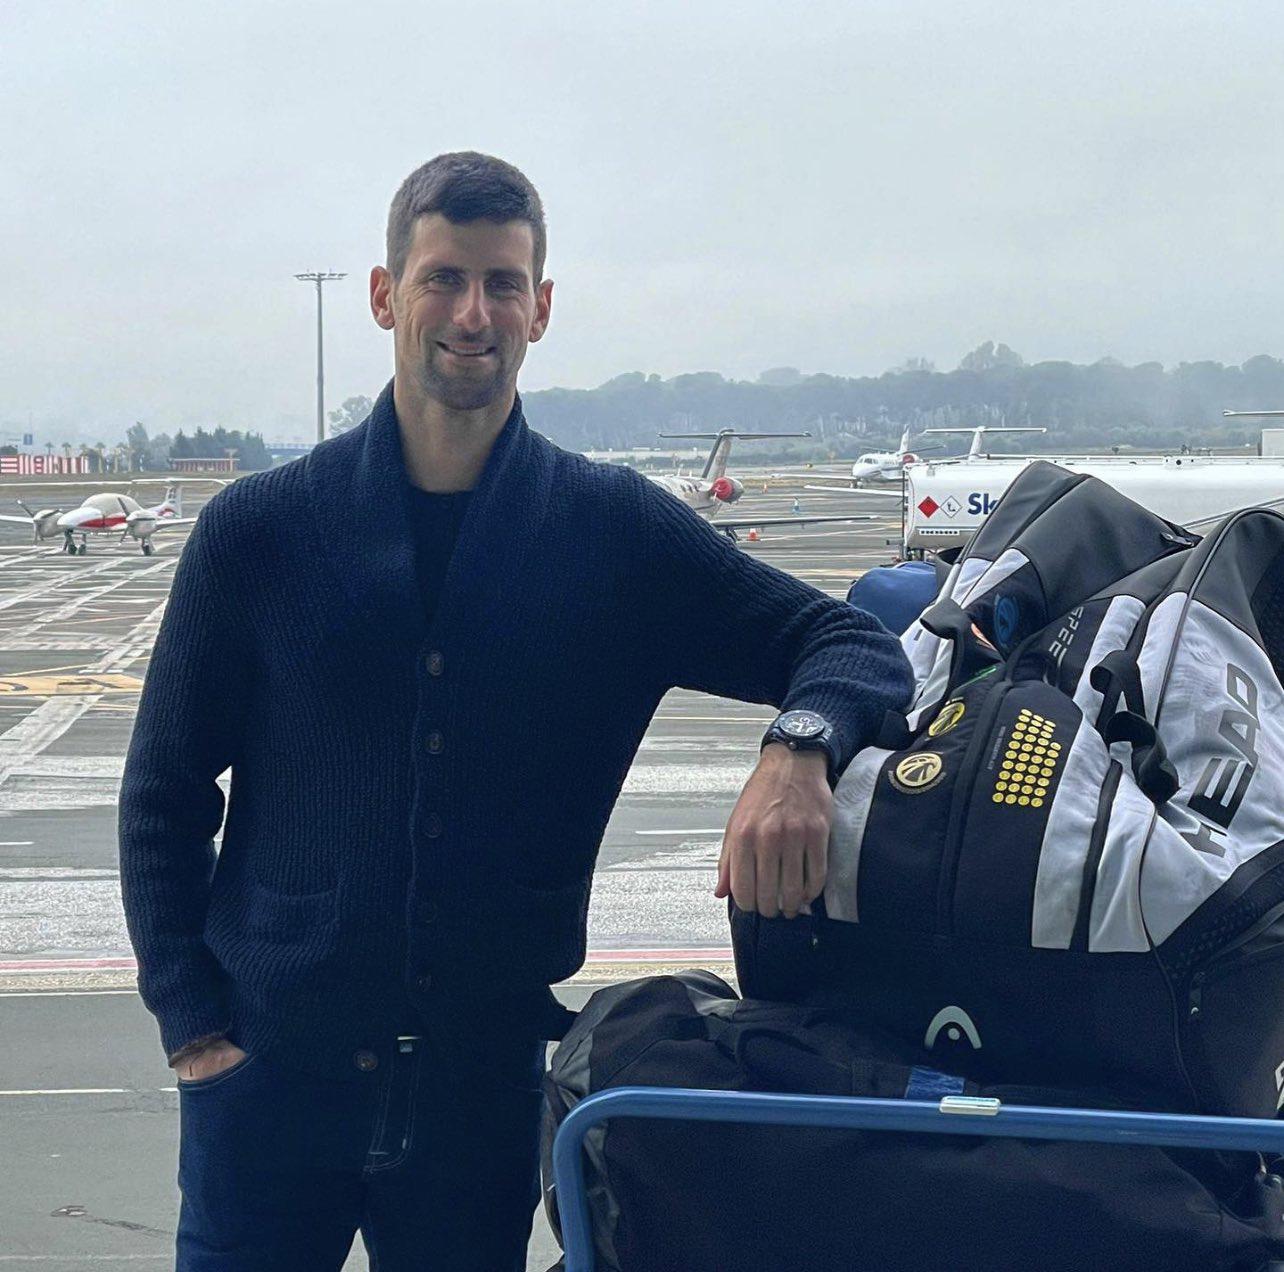 $!Por no estar vacunado, Australia rechaza visa de Novak Djokovic y le piden abandonar el país el jueves